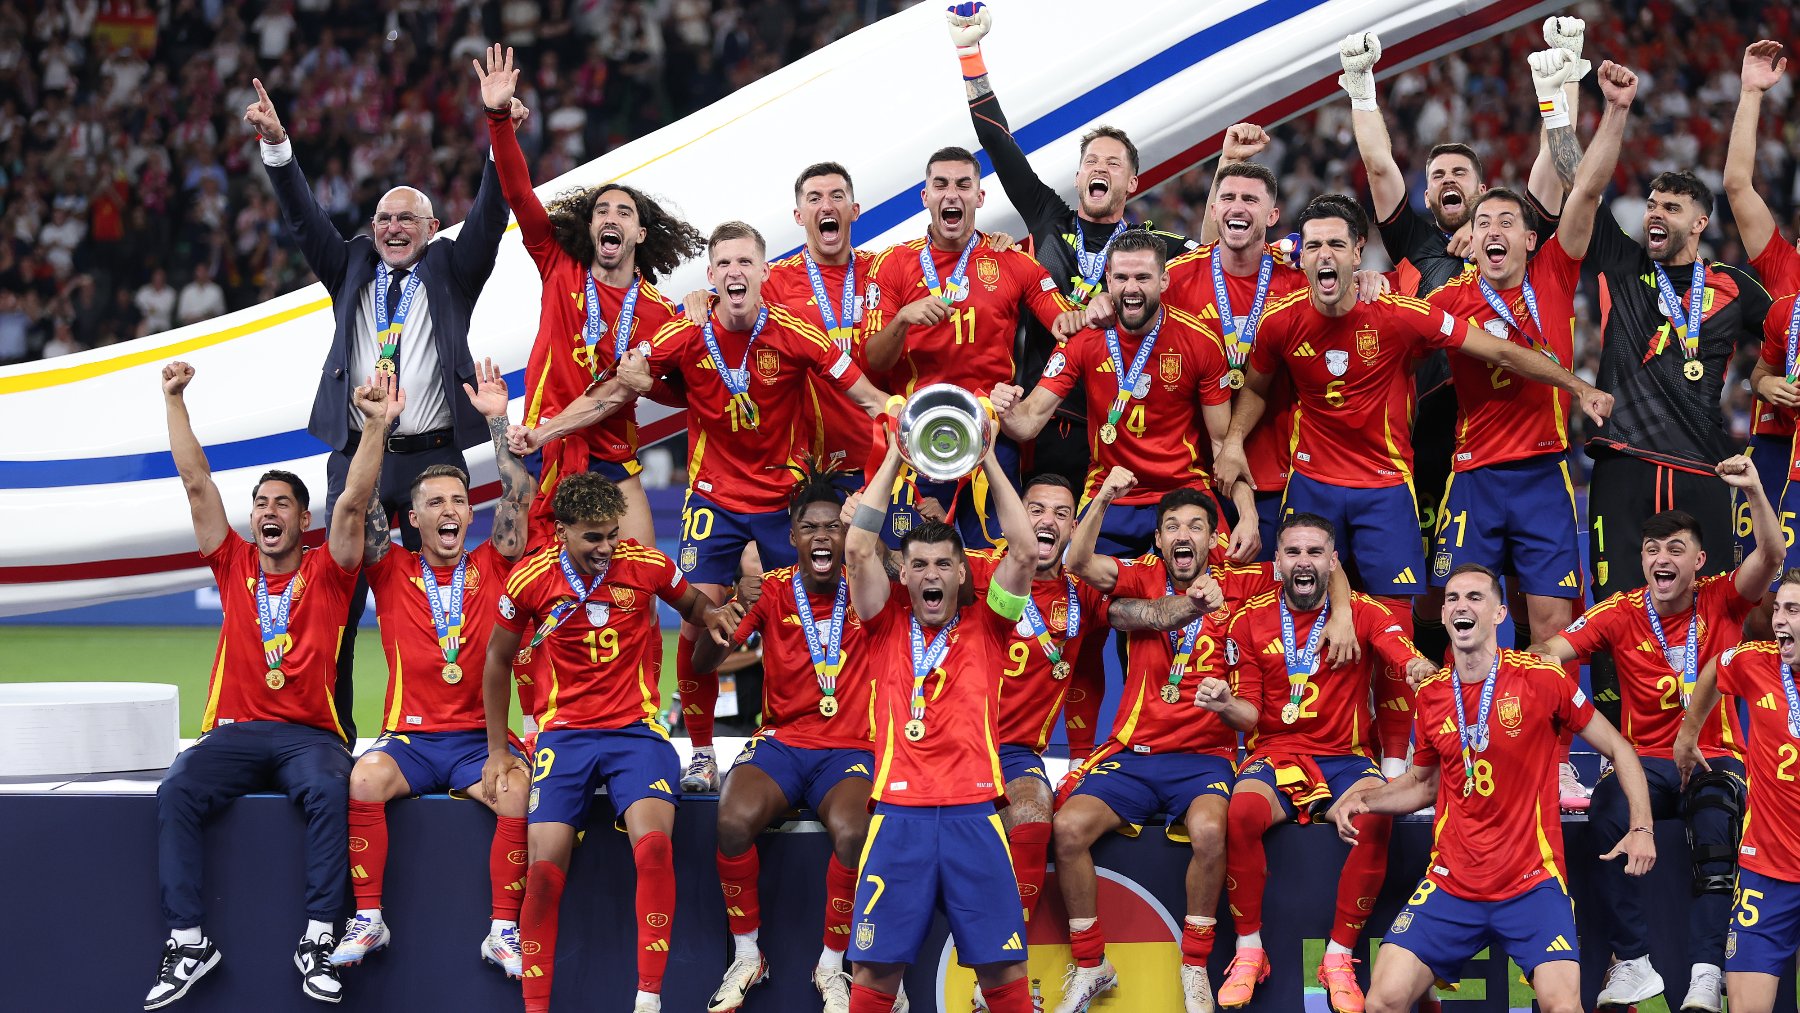 Álvaro Morata levantó la copa de campeones sobre el césped del Olímpico de Berlín. (Getty)